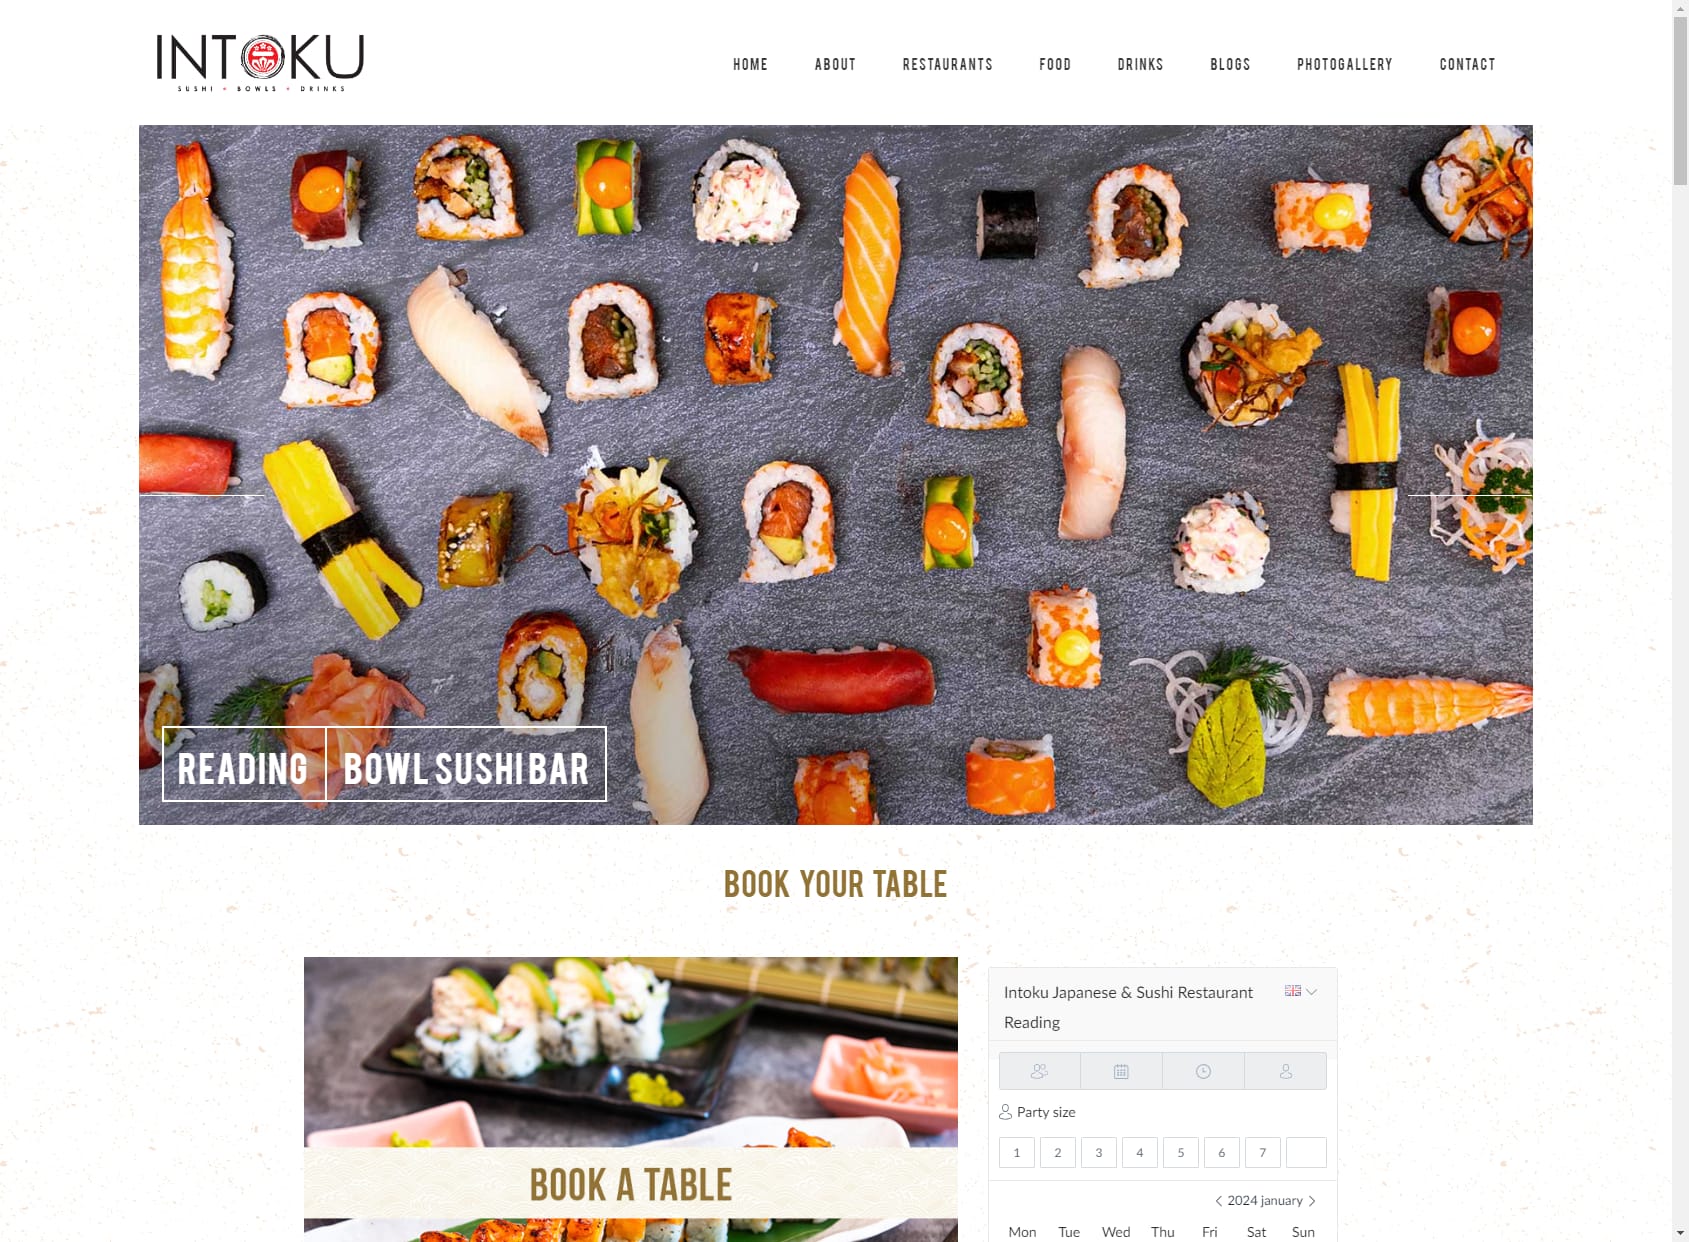 Intoku Japanese & Sushi Restaurant Reading